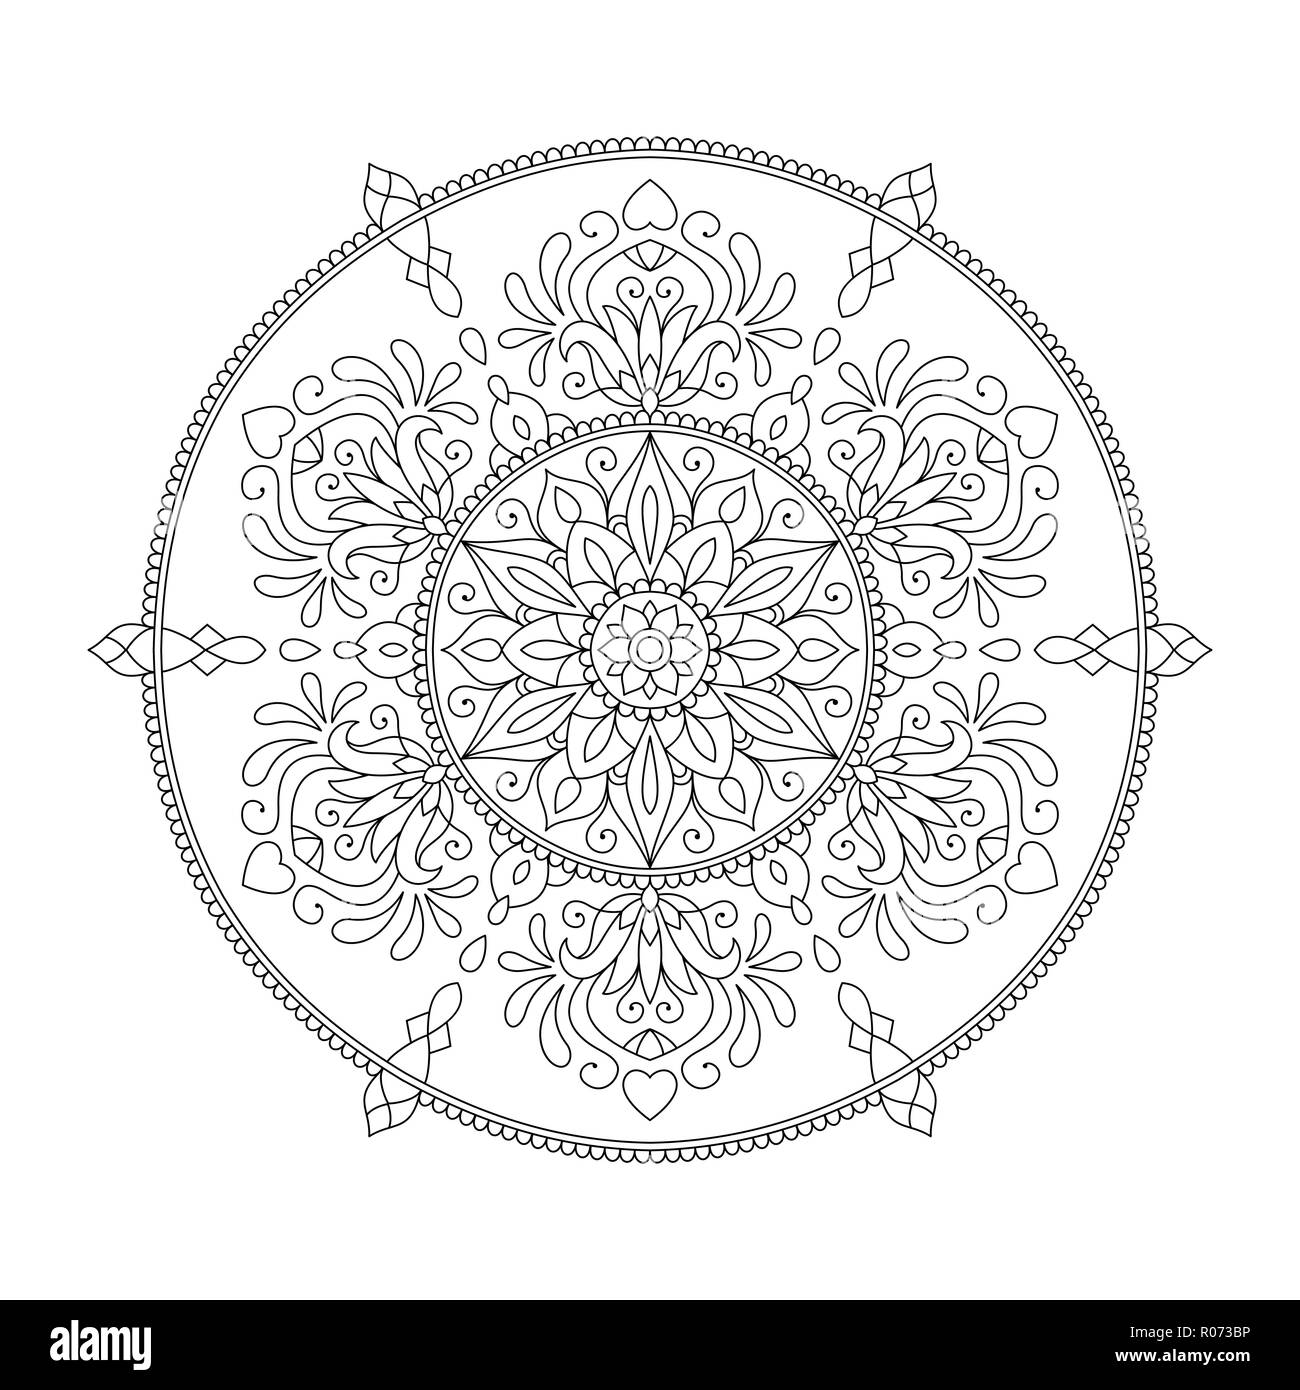 40 Mandala Semplici da Colorare Fiori Adulti Sfondo Nero: libro mandala  fiori semplici e complessi da colorare adulti - mandala sfondo nero adulti  (Paperback)